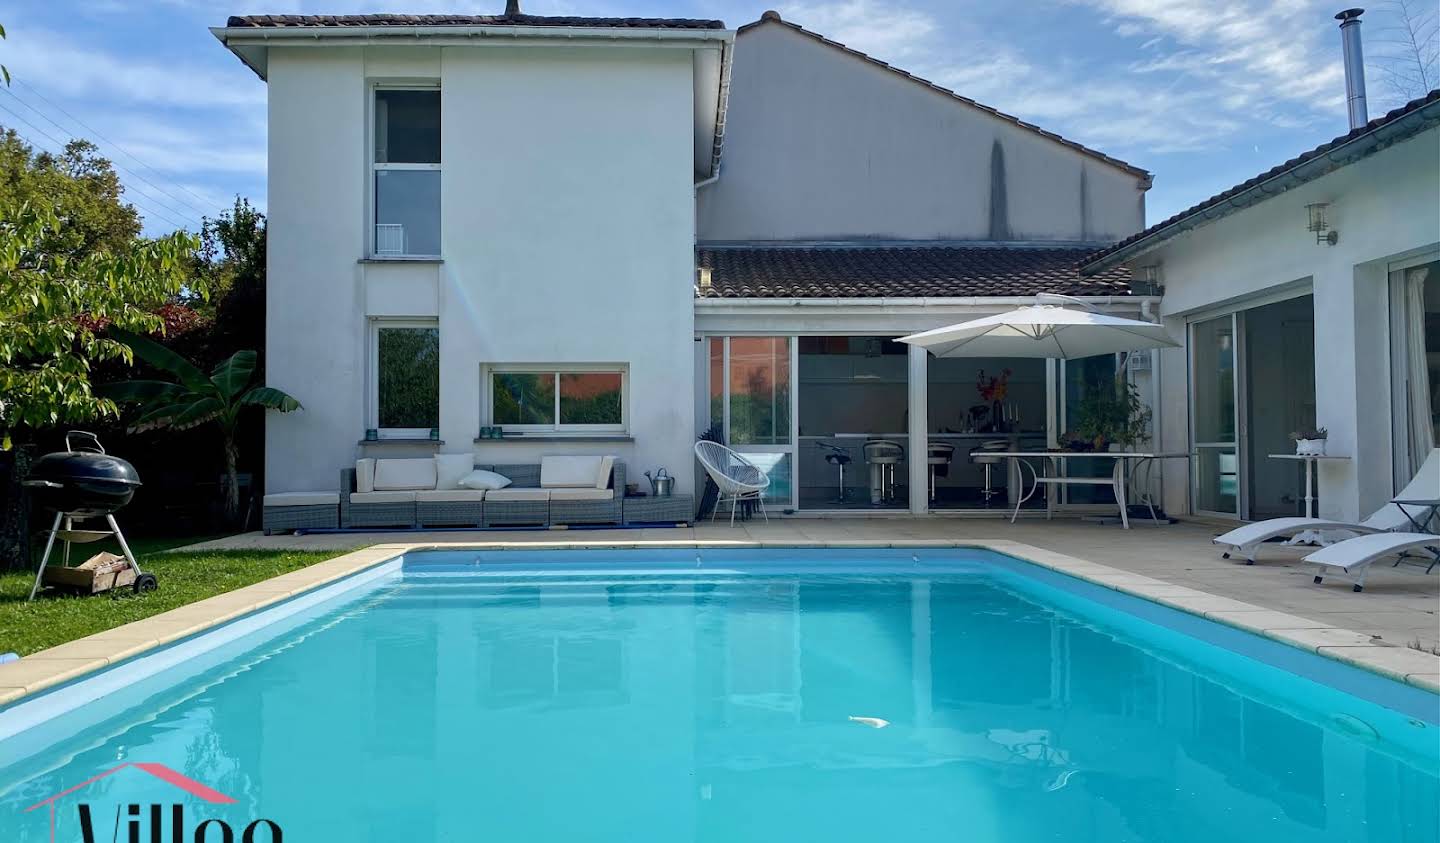 Villa with pool and terrace Saint-Médard-en-Jalles